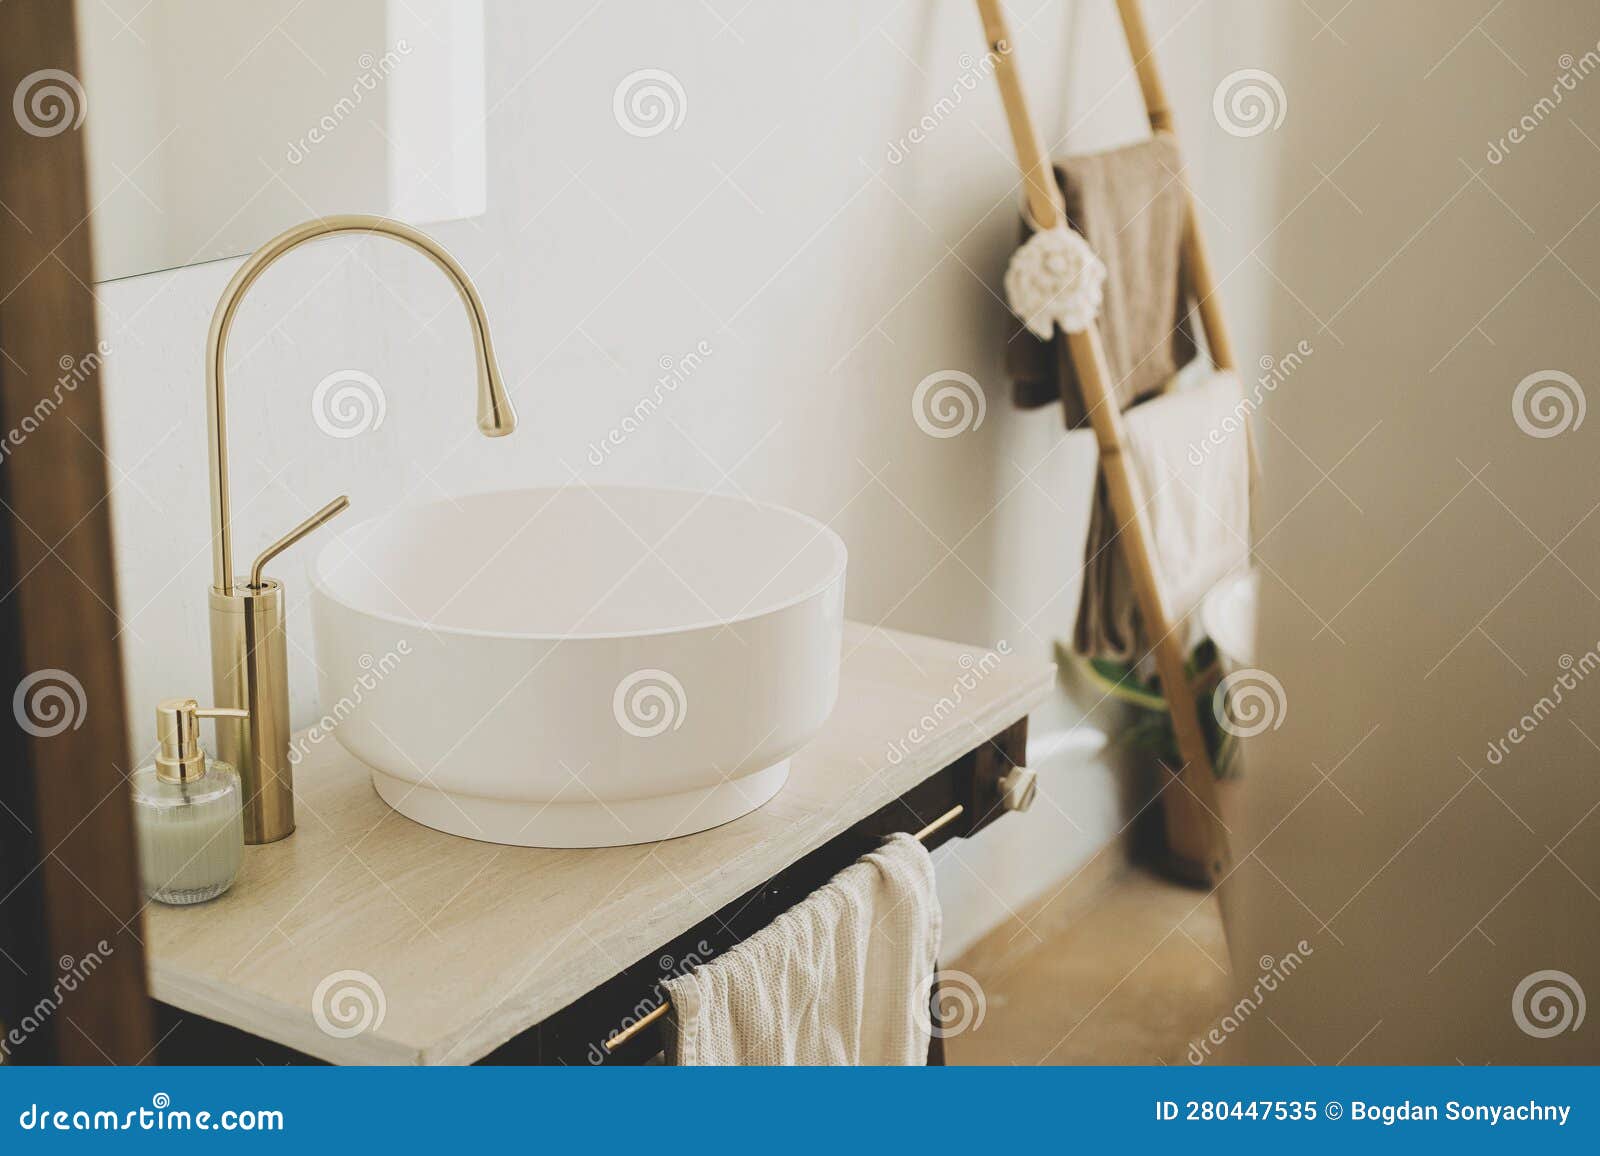 Un lavabo de baño con un grifo y un grifo dorado.